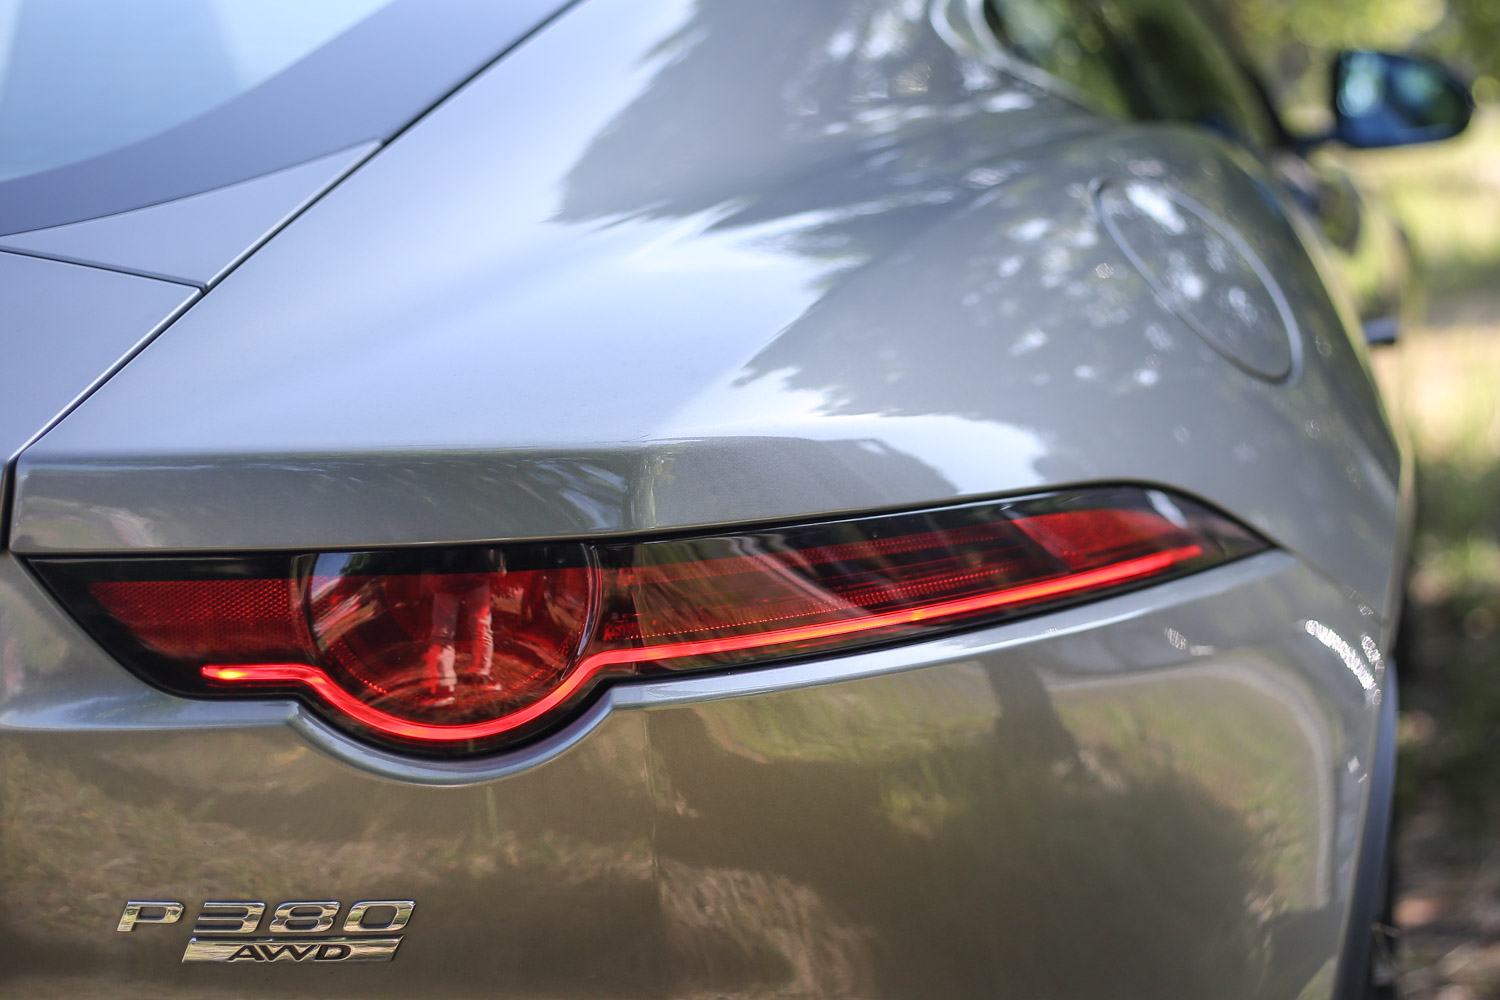 絕美的尾燈設計，讓人一眼就認出 Jaguar 血統身份，下方的數字與英文，則說明馬力規格與四輪驅動配置。